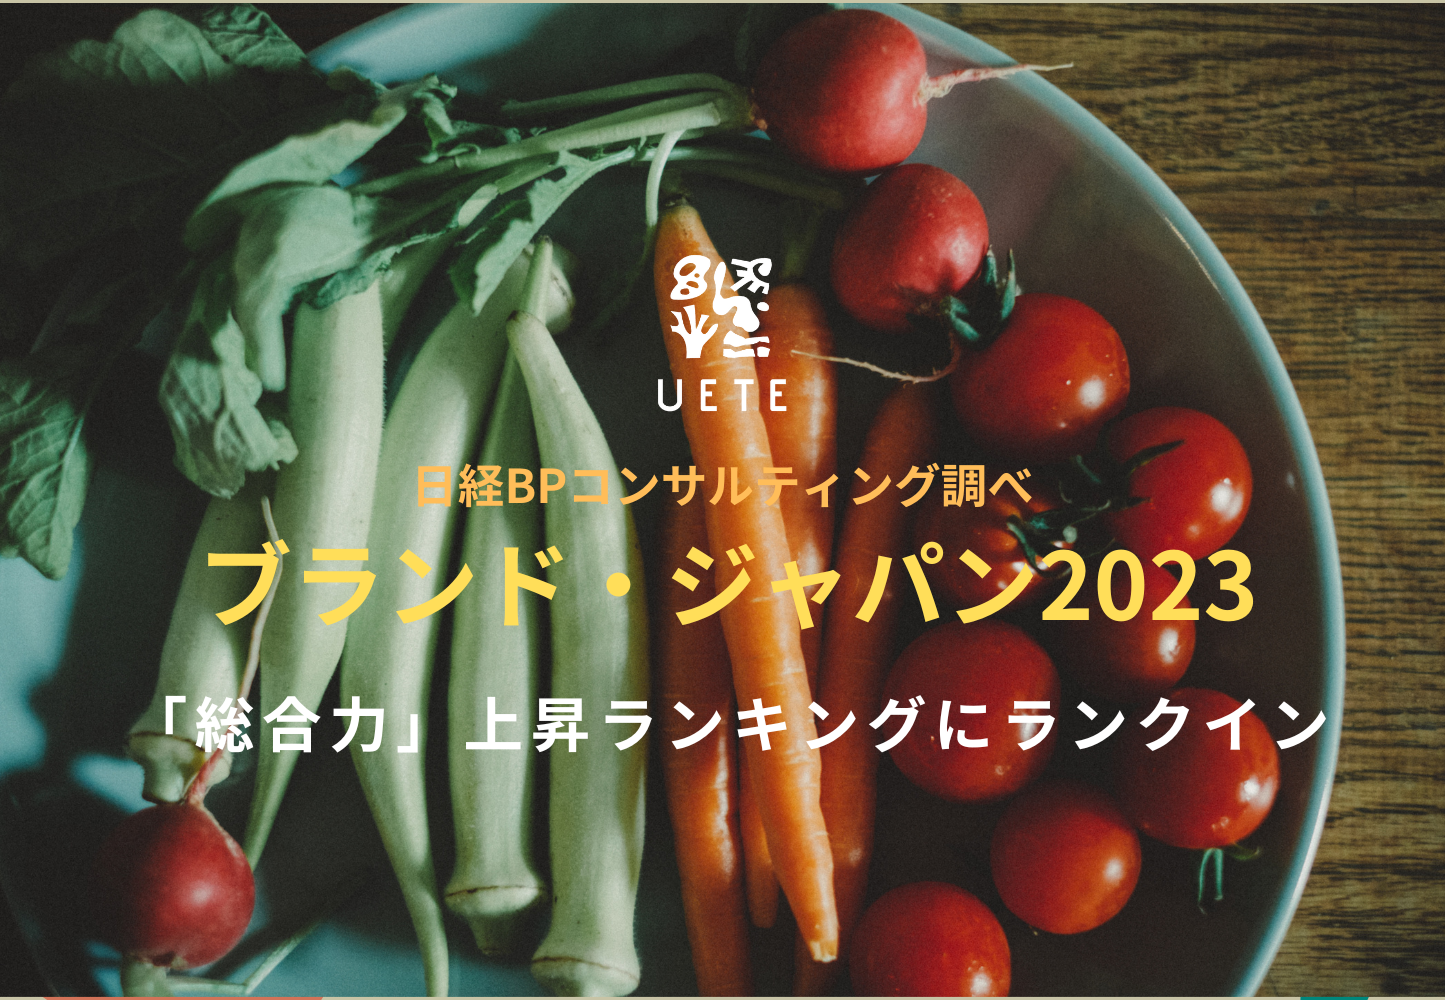 『ブランド・ジャパン2023』で「総合力」上昇ランキングにランクイン